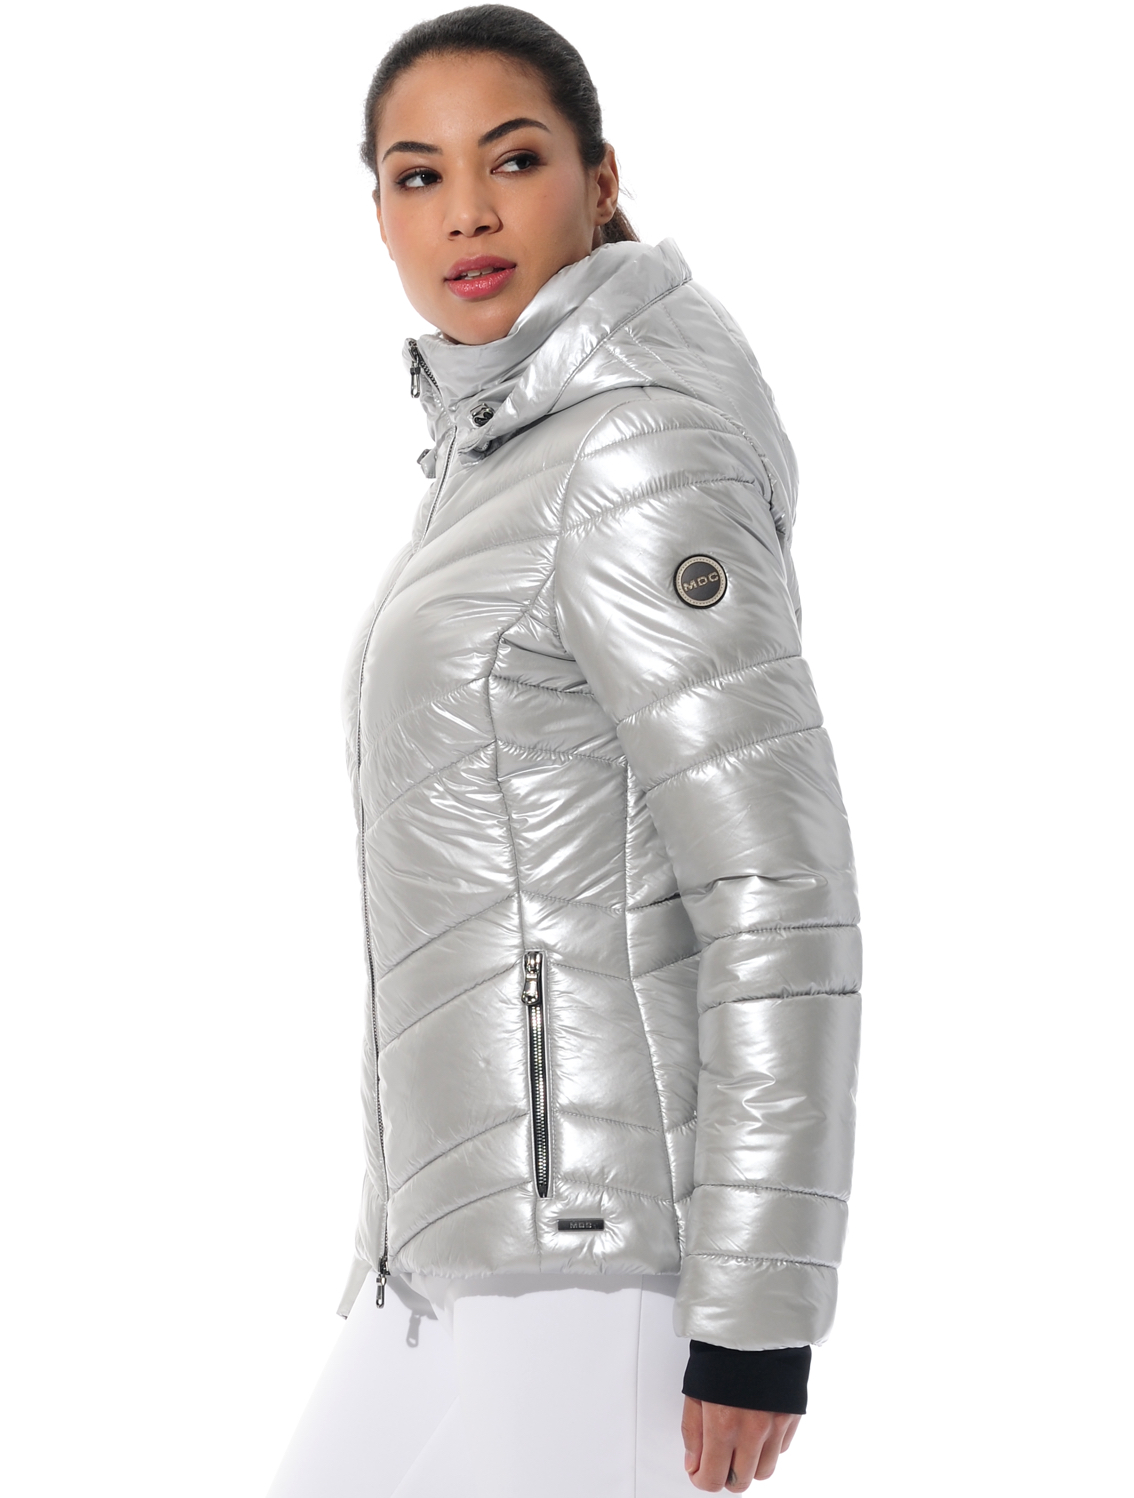 shiny ski jacket silver 